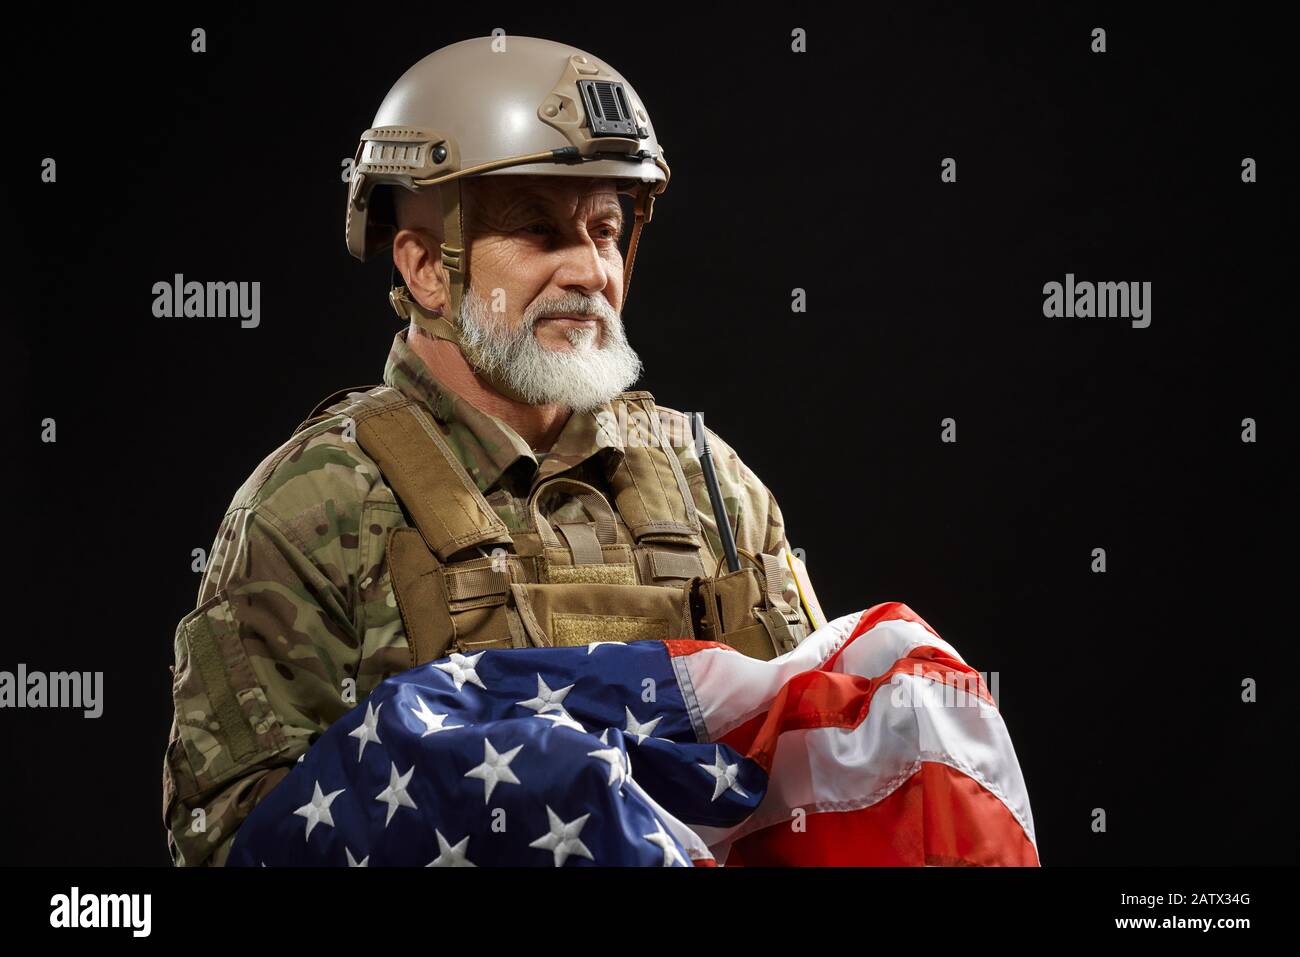 Vista frontale del veterano militare americano con bandiera ribassata e guardando lontano. Ritratto di vecchio ufficiale maschile in uniforme camouflage e casco in posa in atmosfera scura. Concetto di militare, patriottismo. Foto Stock